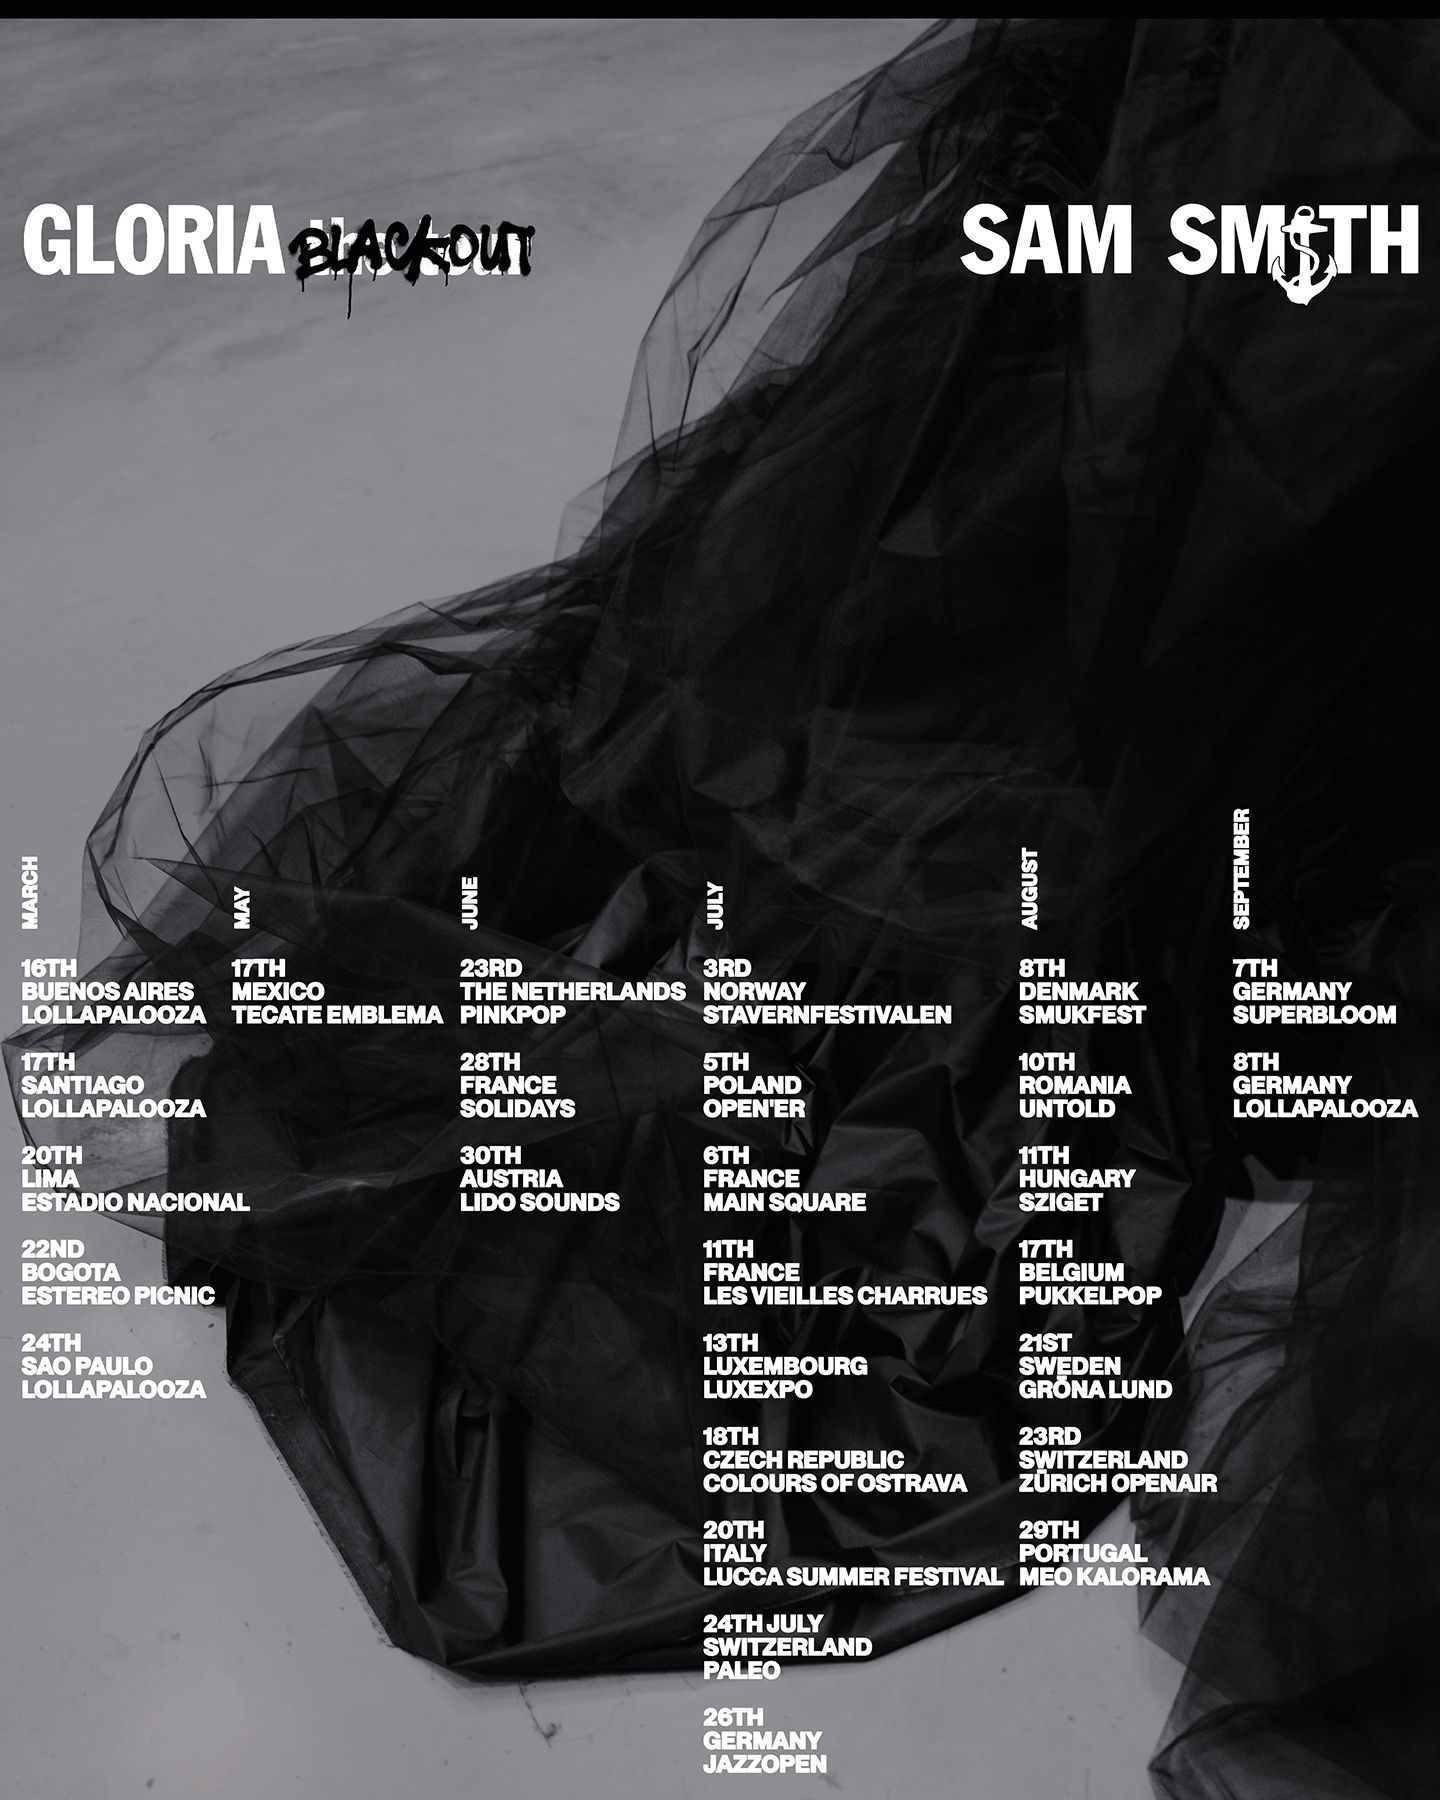 sam smith tour website